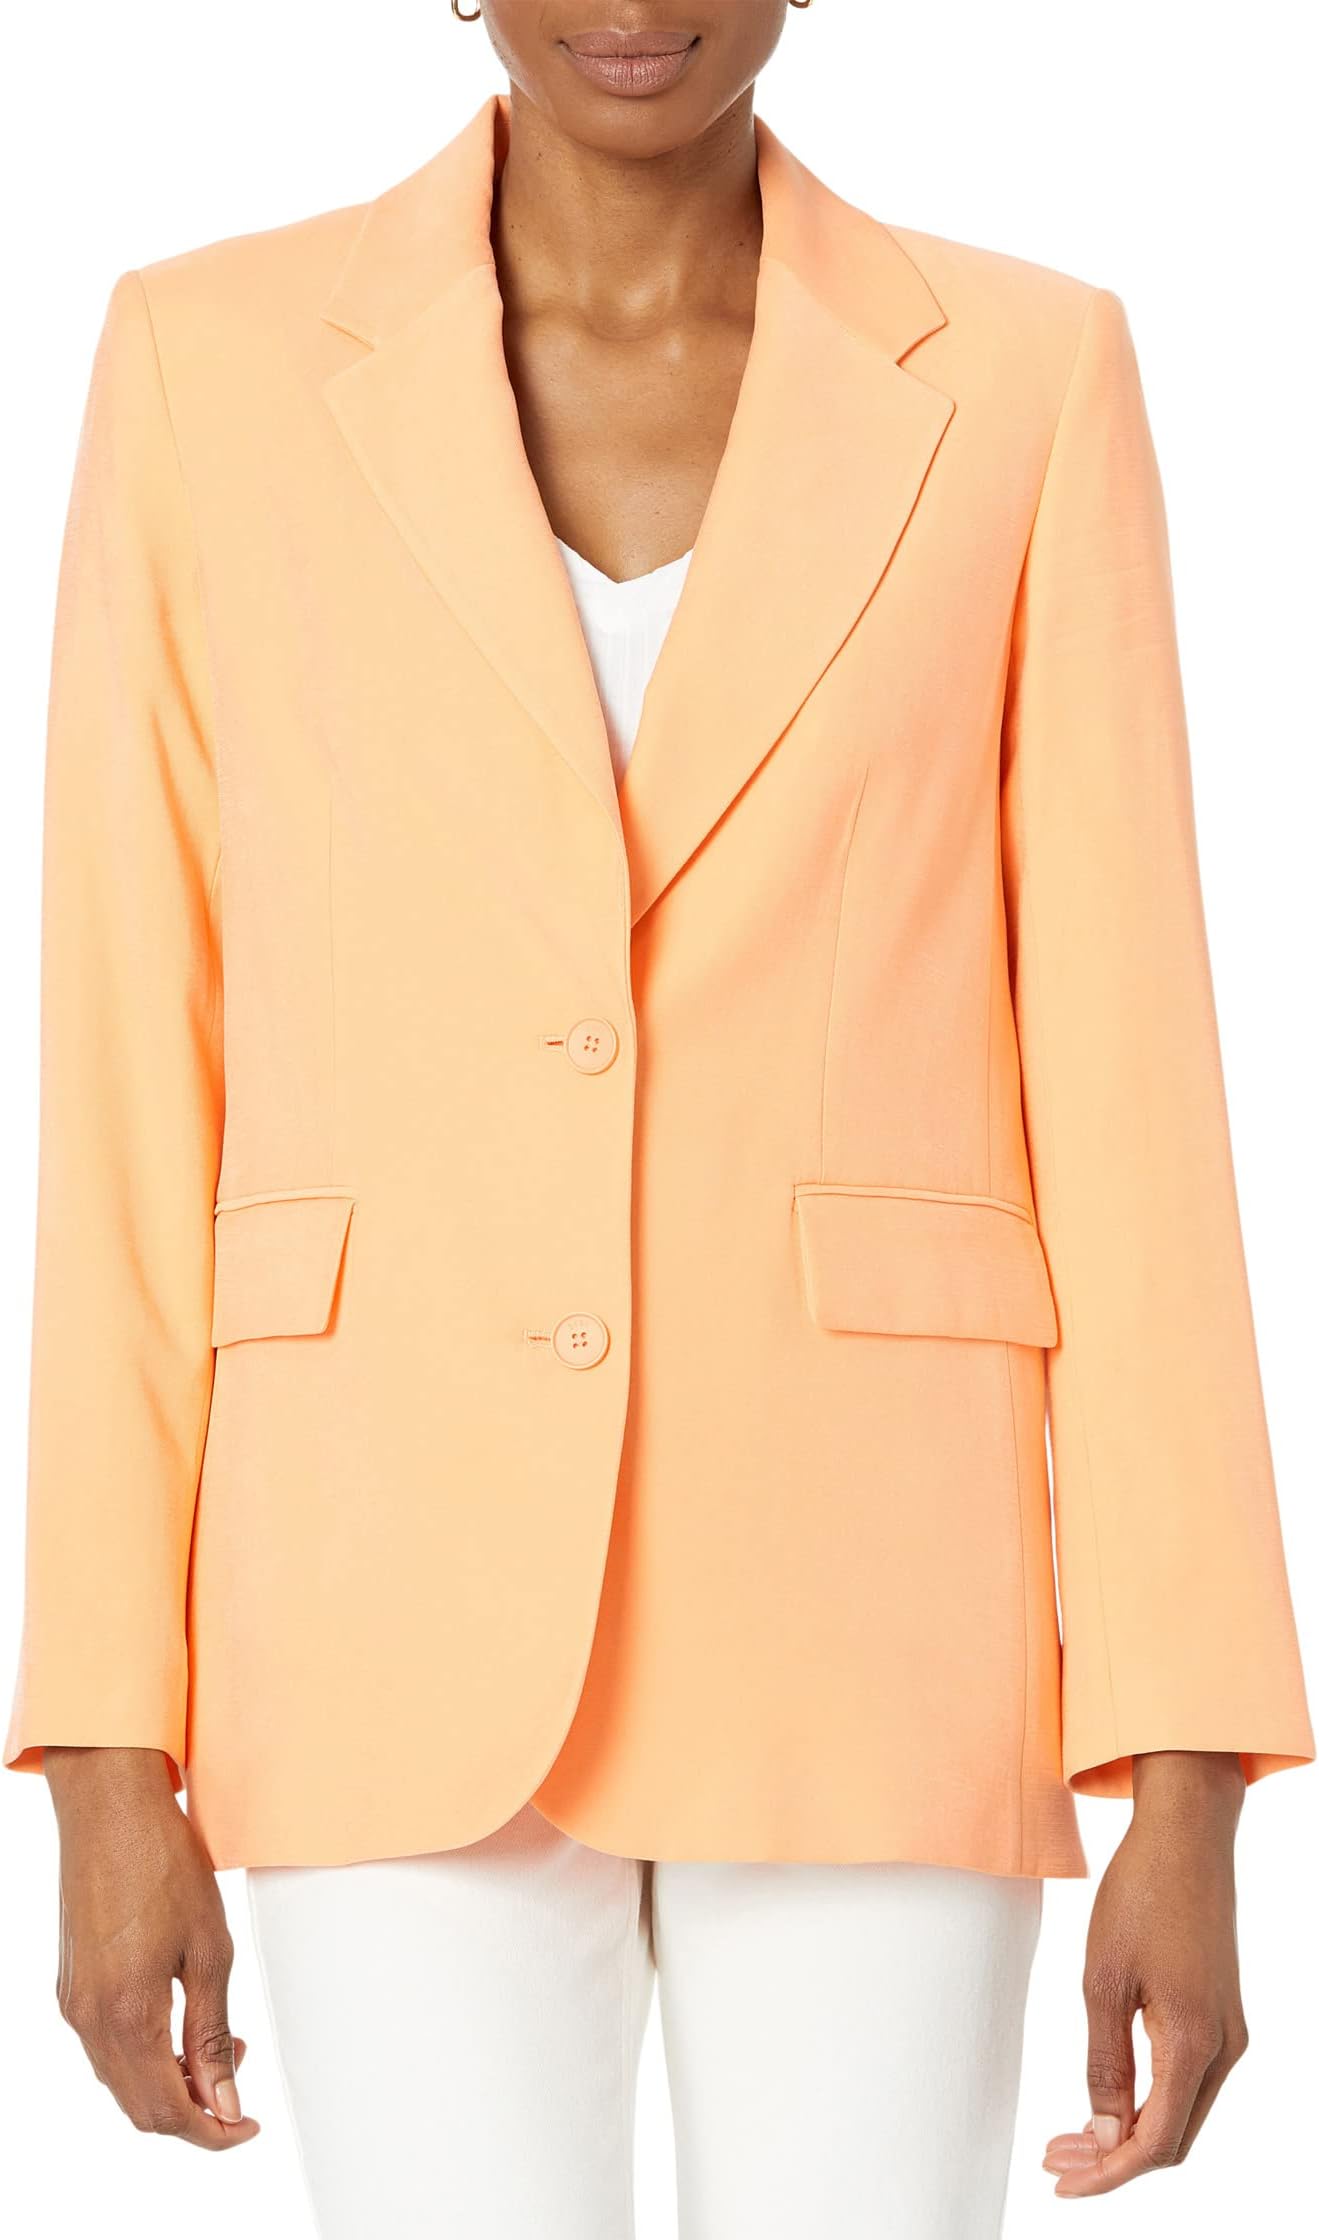 Пиджак на одной пуговице из матового твила DKNY, цвет Canteloupe пиджак на одной пуговице из матового твила dkny цвет persimmon